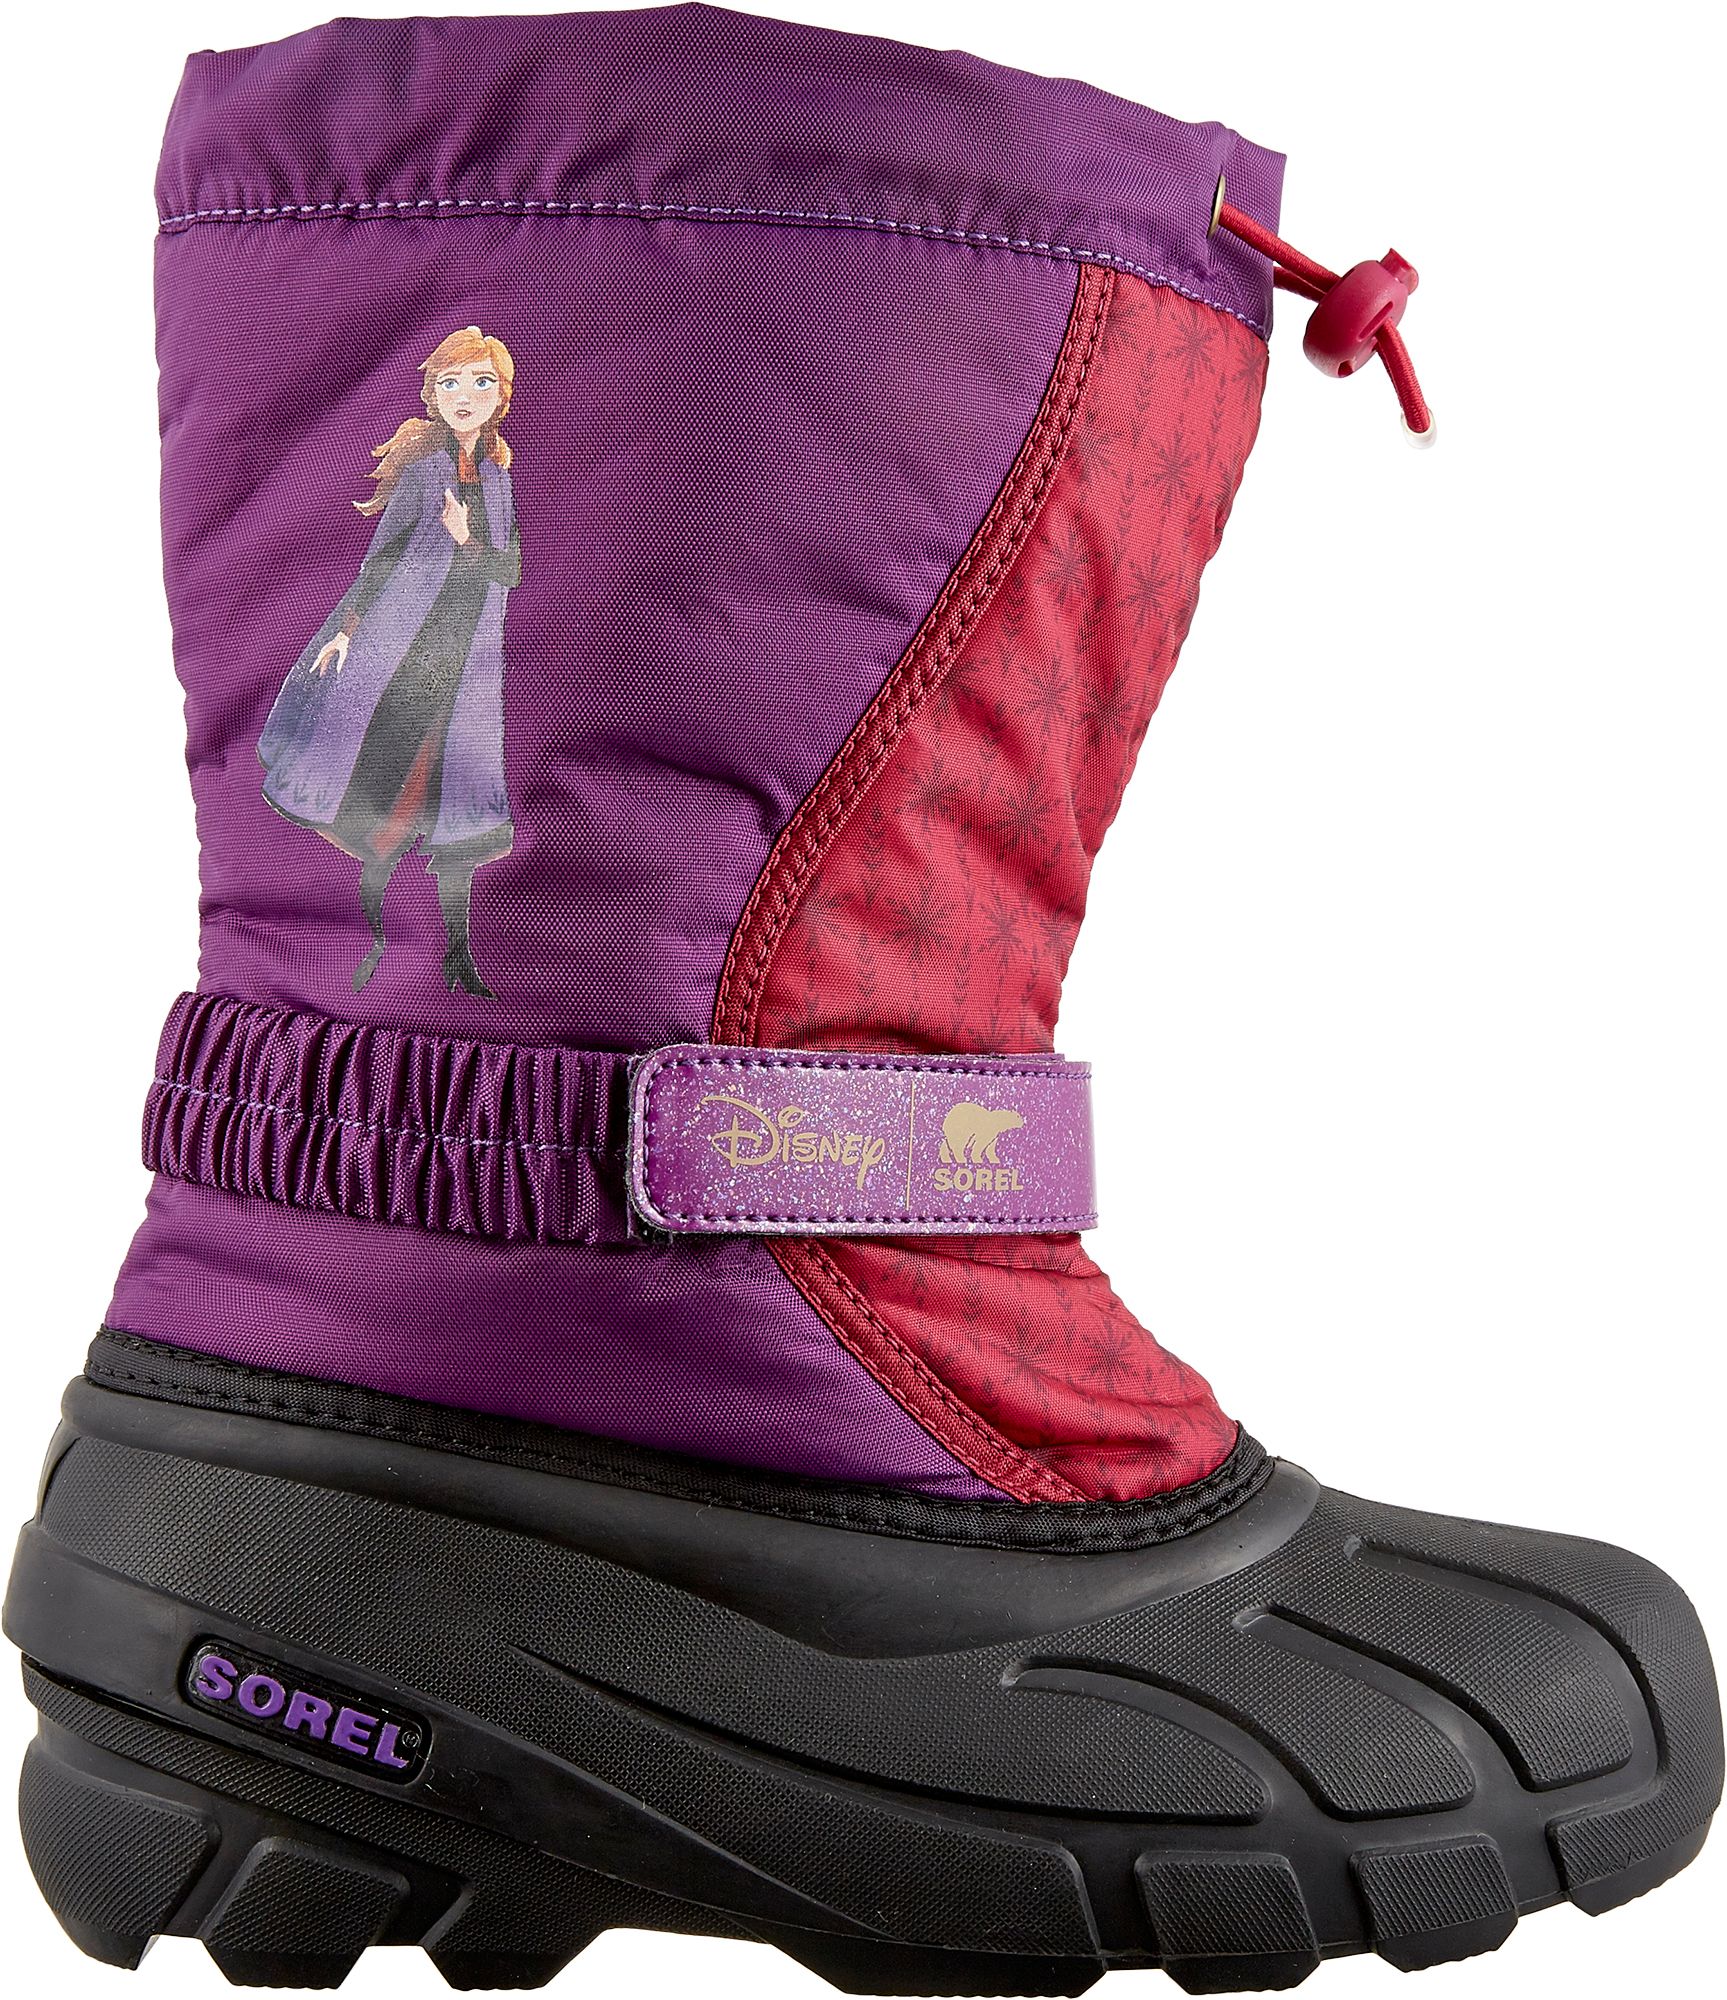 new sorel boots